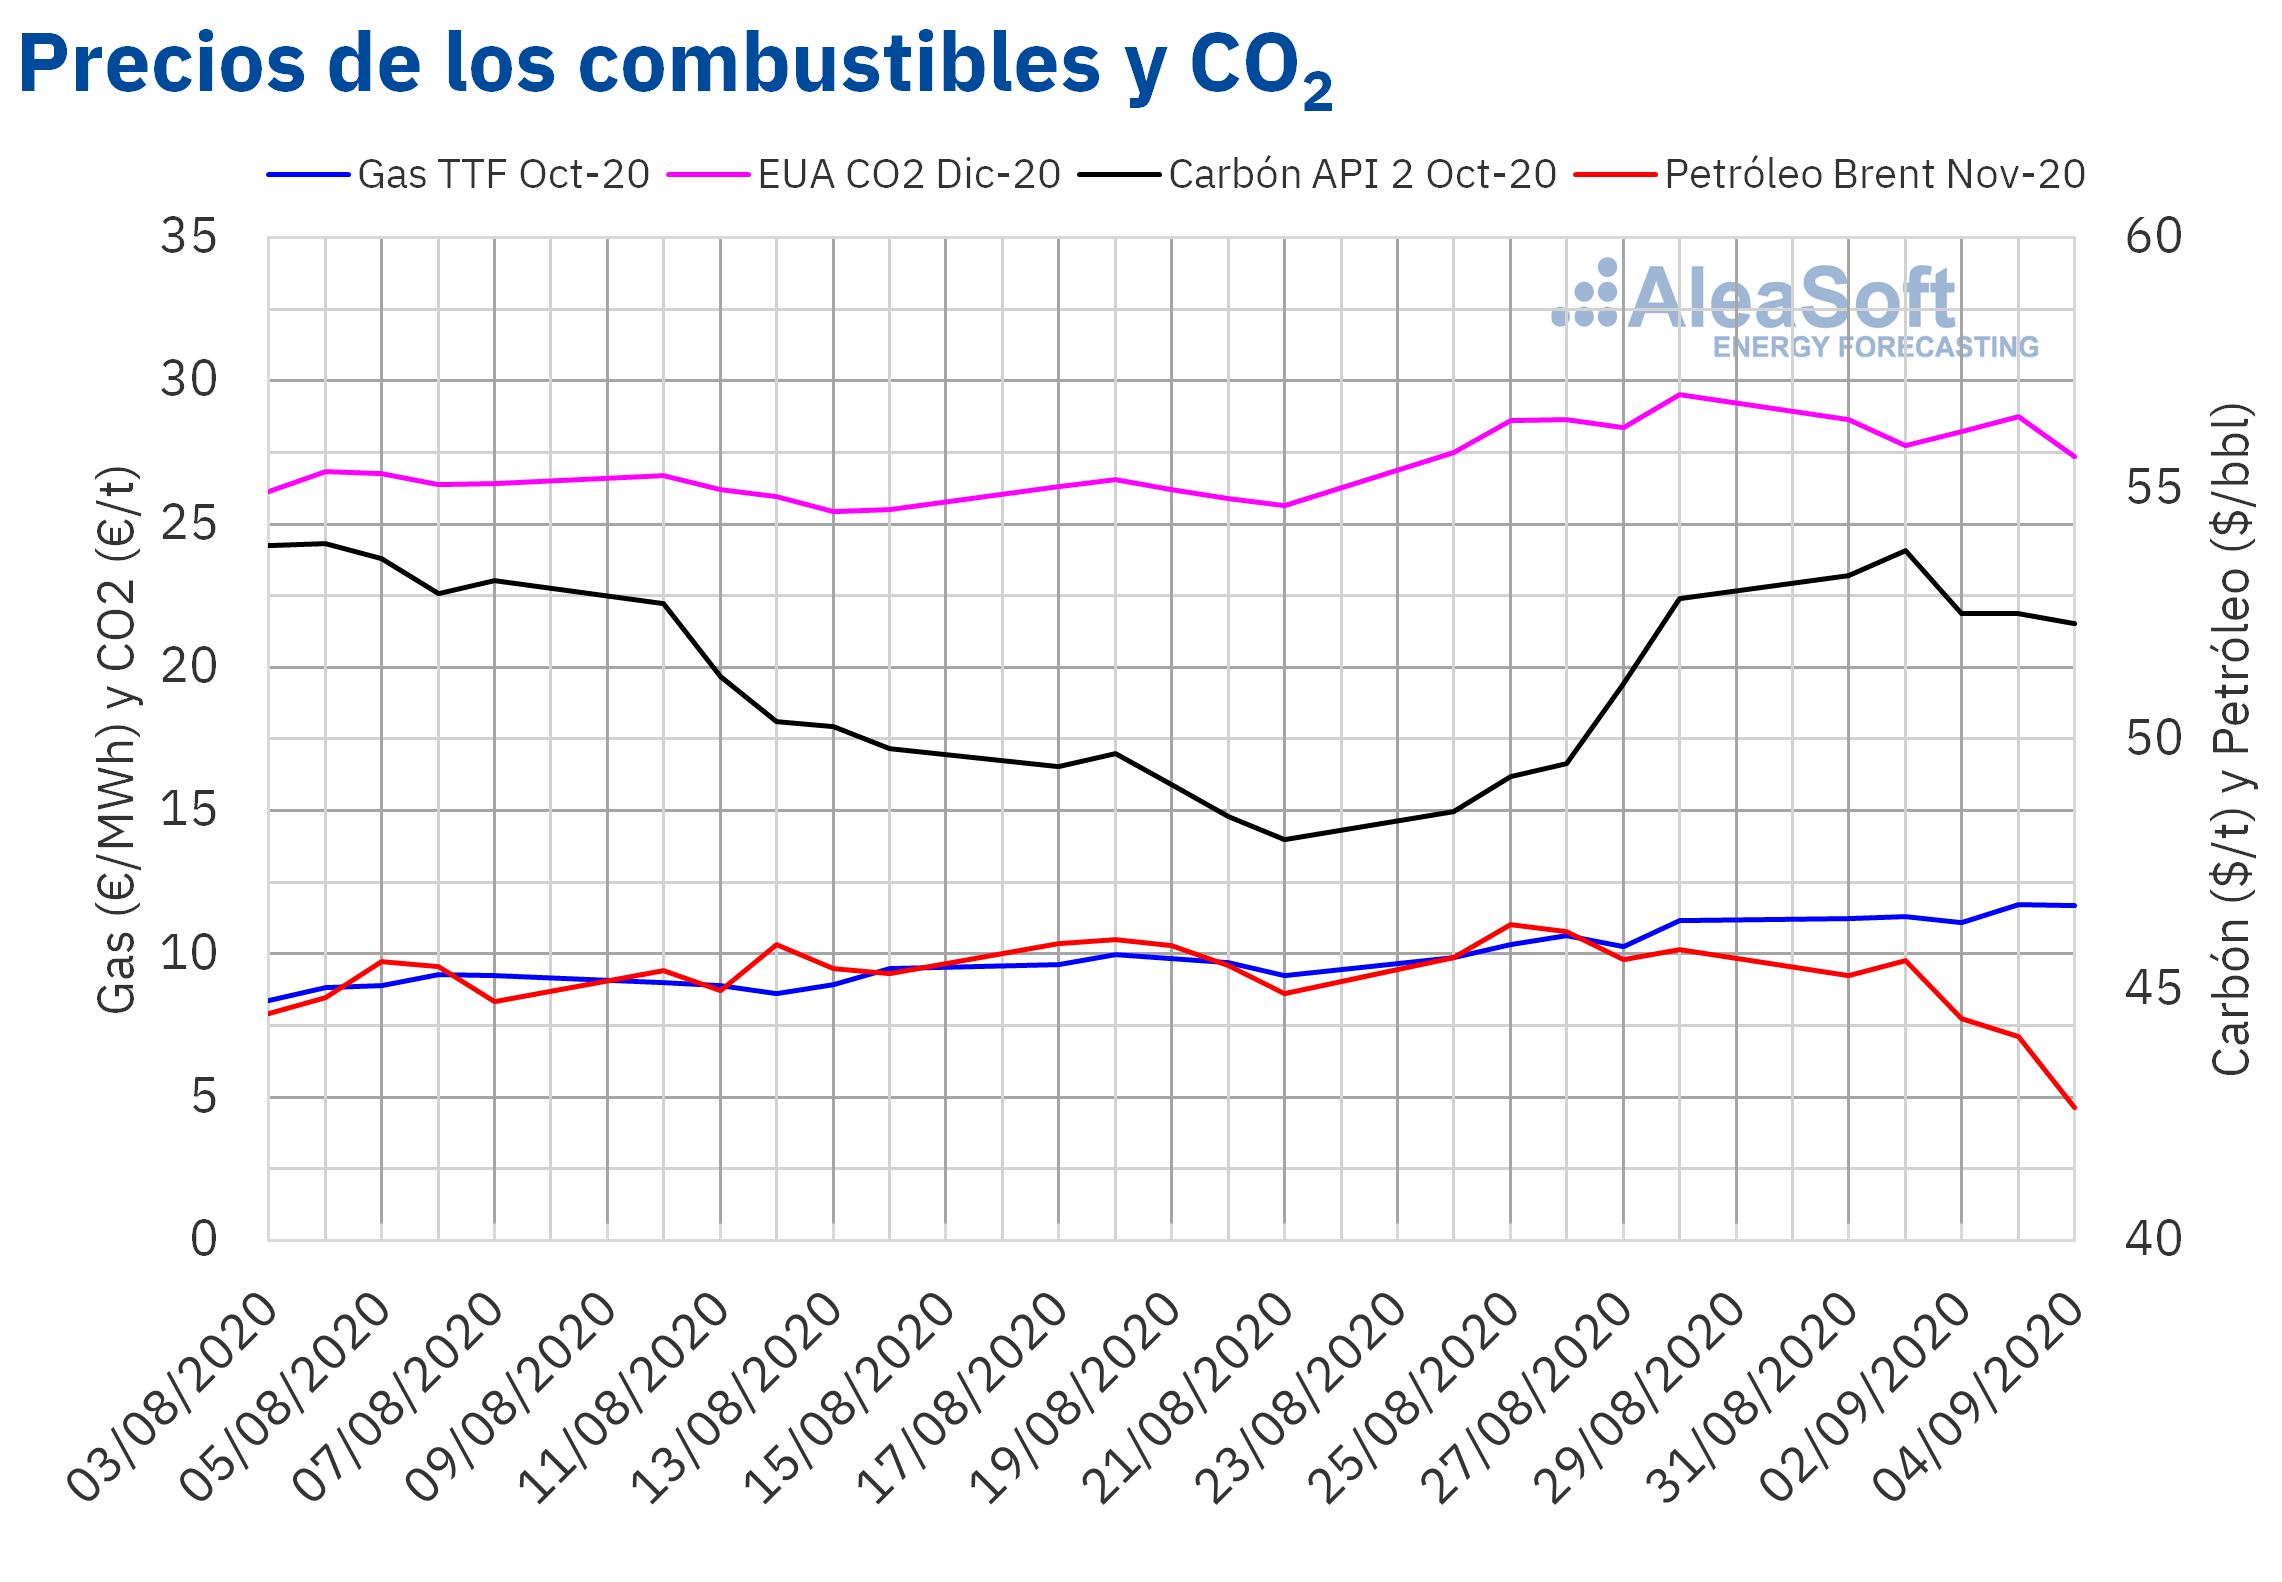 AleaSoft - Precios de gas carbón Brent y CO2